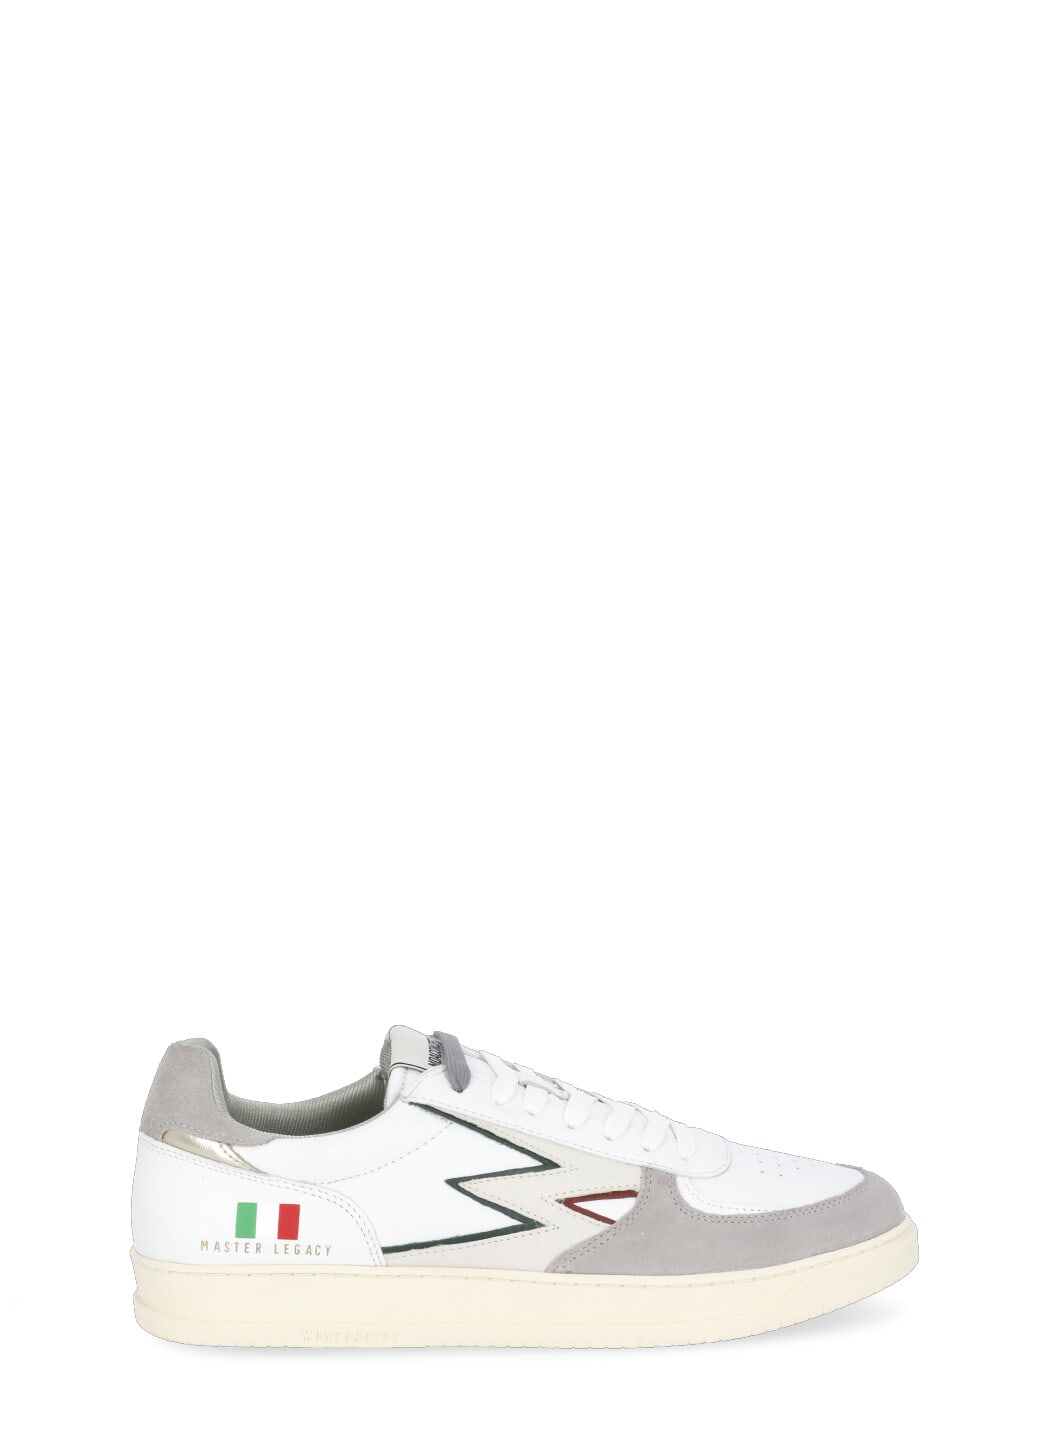 M.O.A. master of arts Master Legacy Flag Italia Sneakers